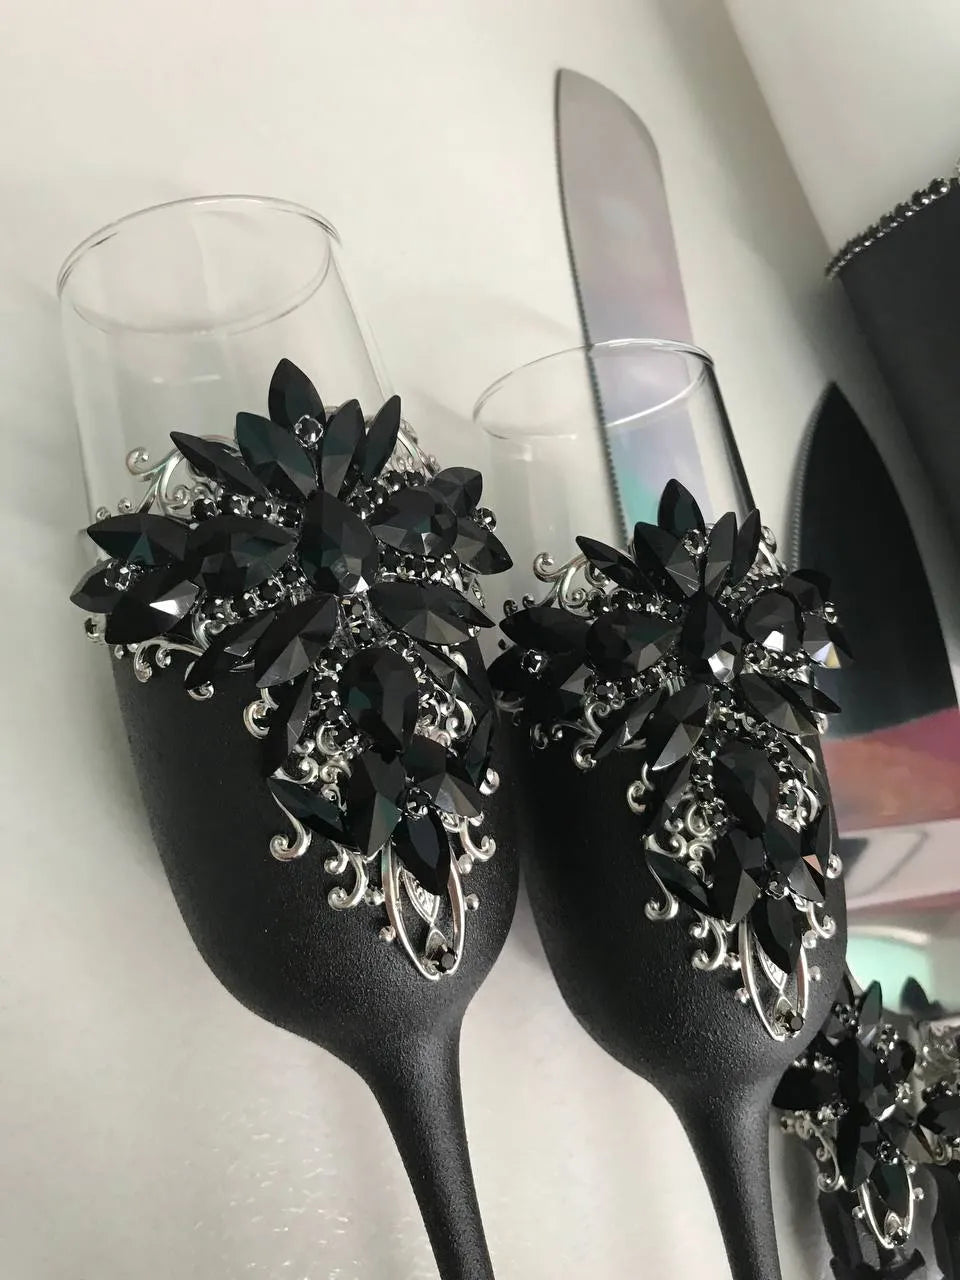 Elegant Black Themed Wedding Toast Glasses and Cake Set